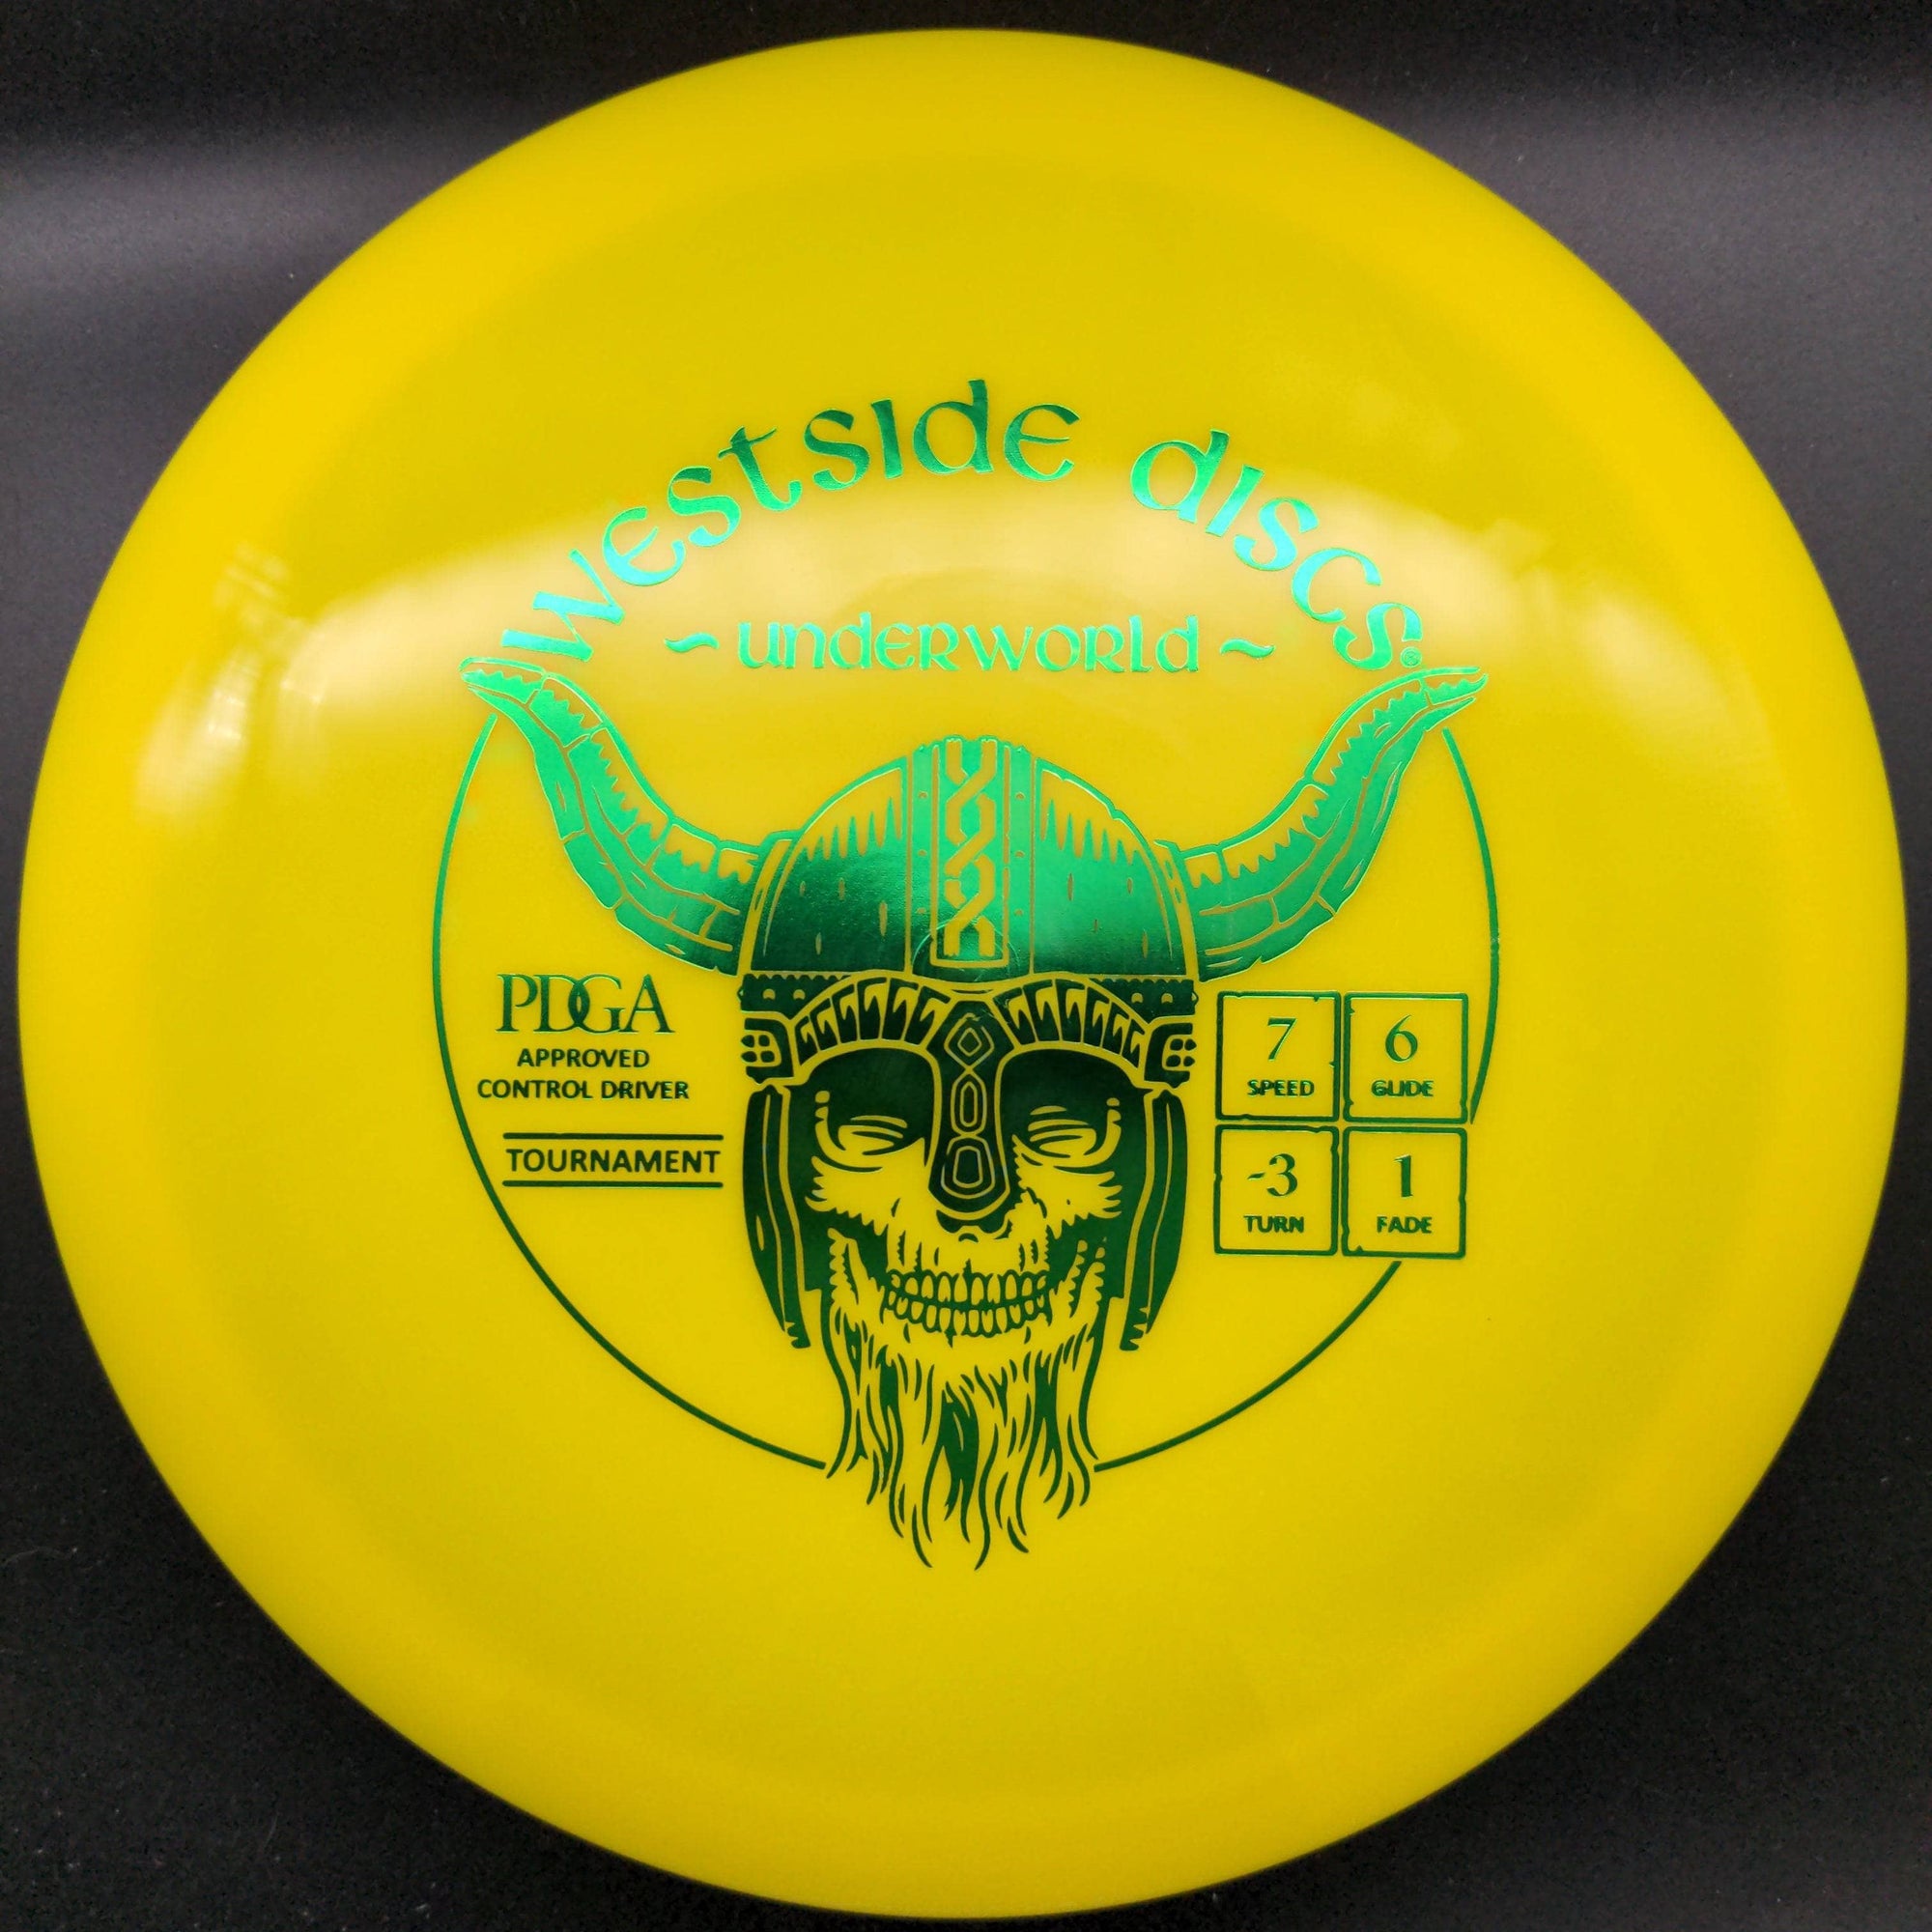 Westside Discs Fairway Driver Yellow Green Stamp 171g Underworld, Tournament